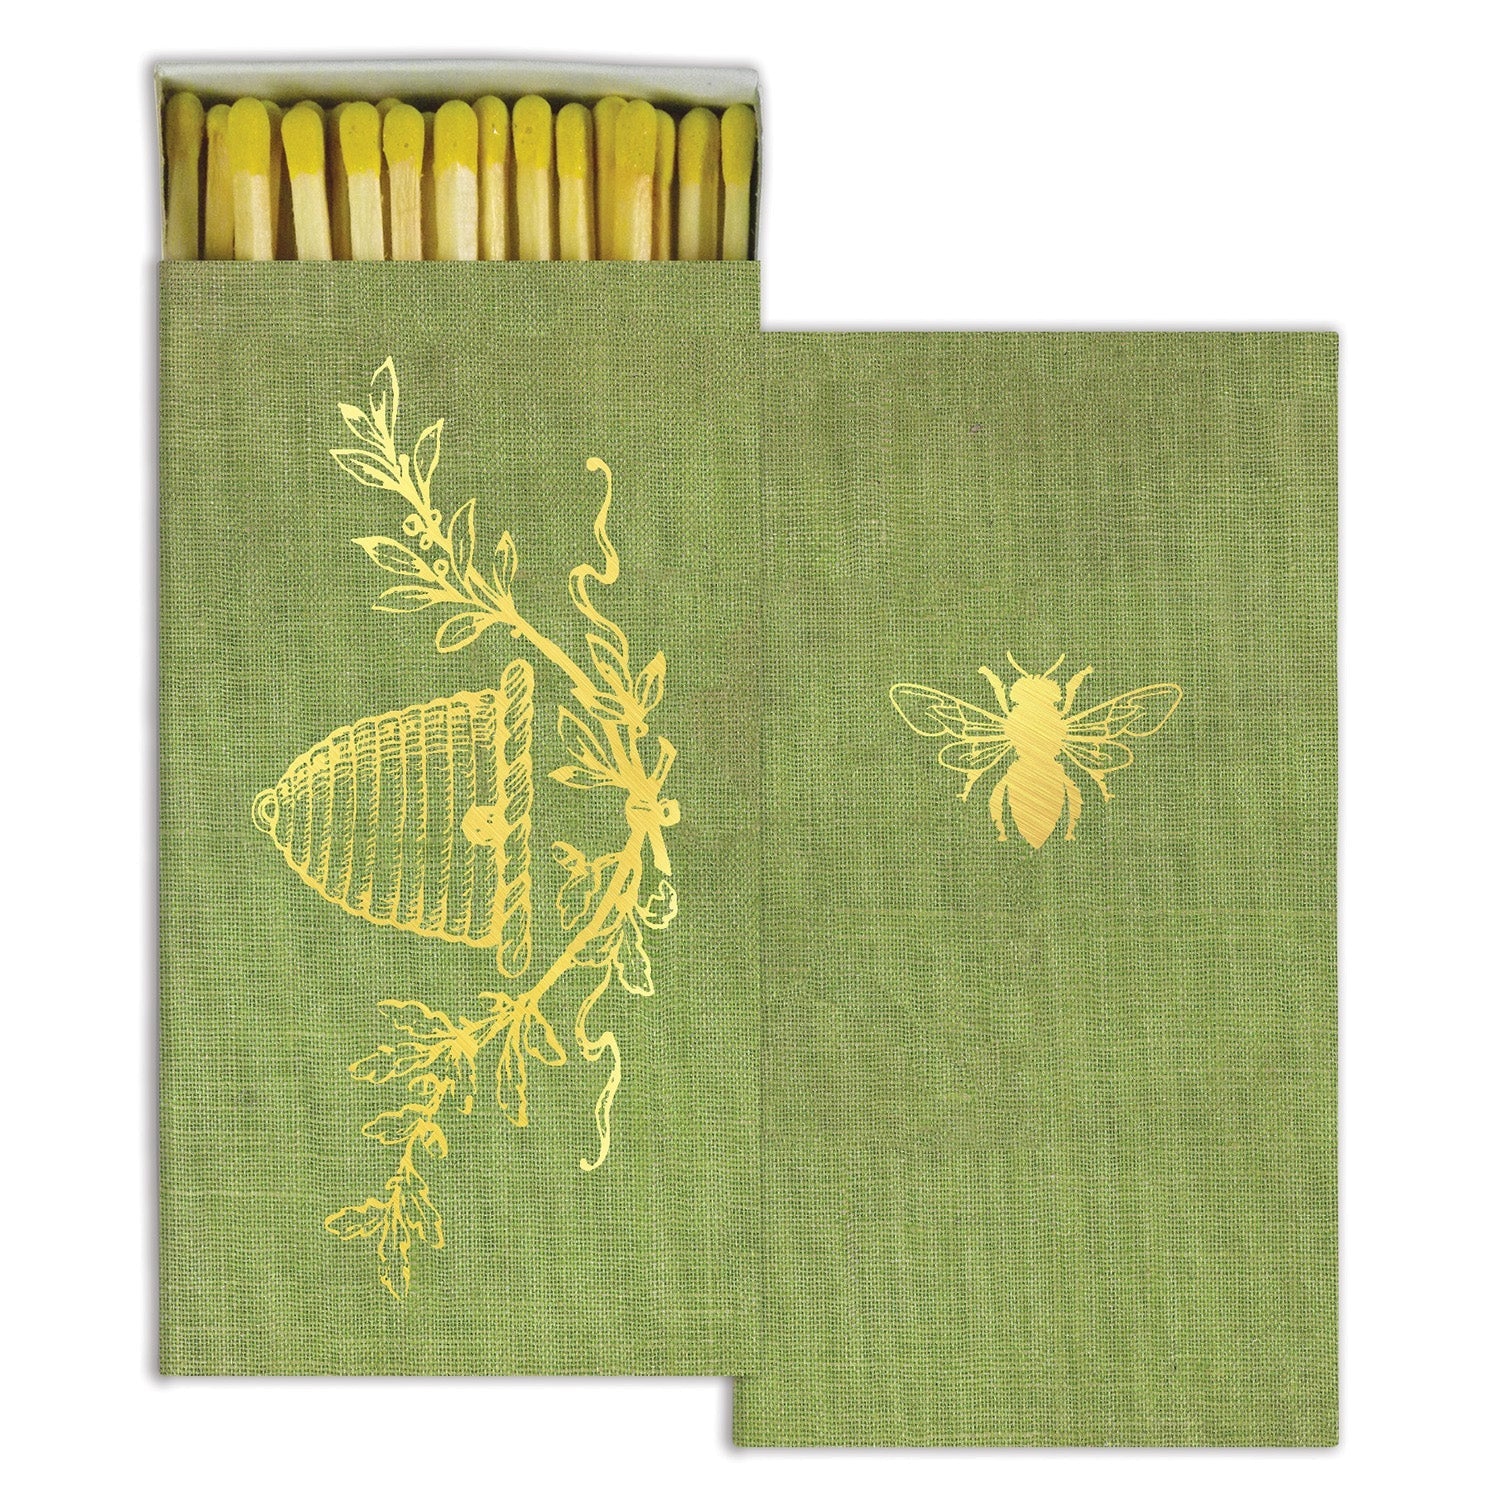 Matches - Bee Crest - Gold Foil  HomArt   